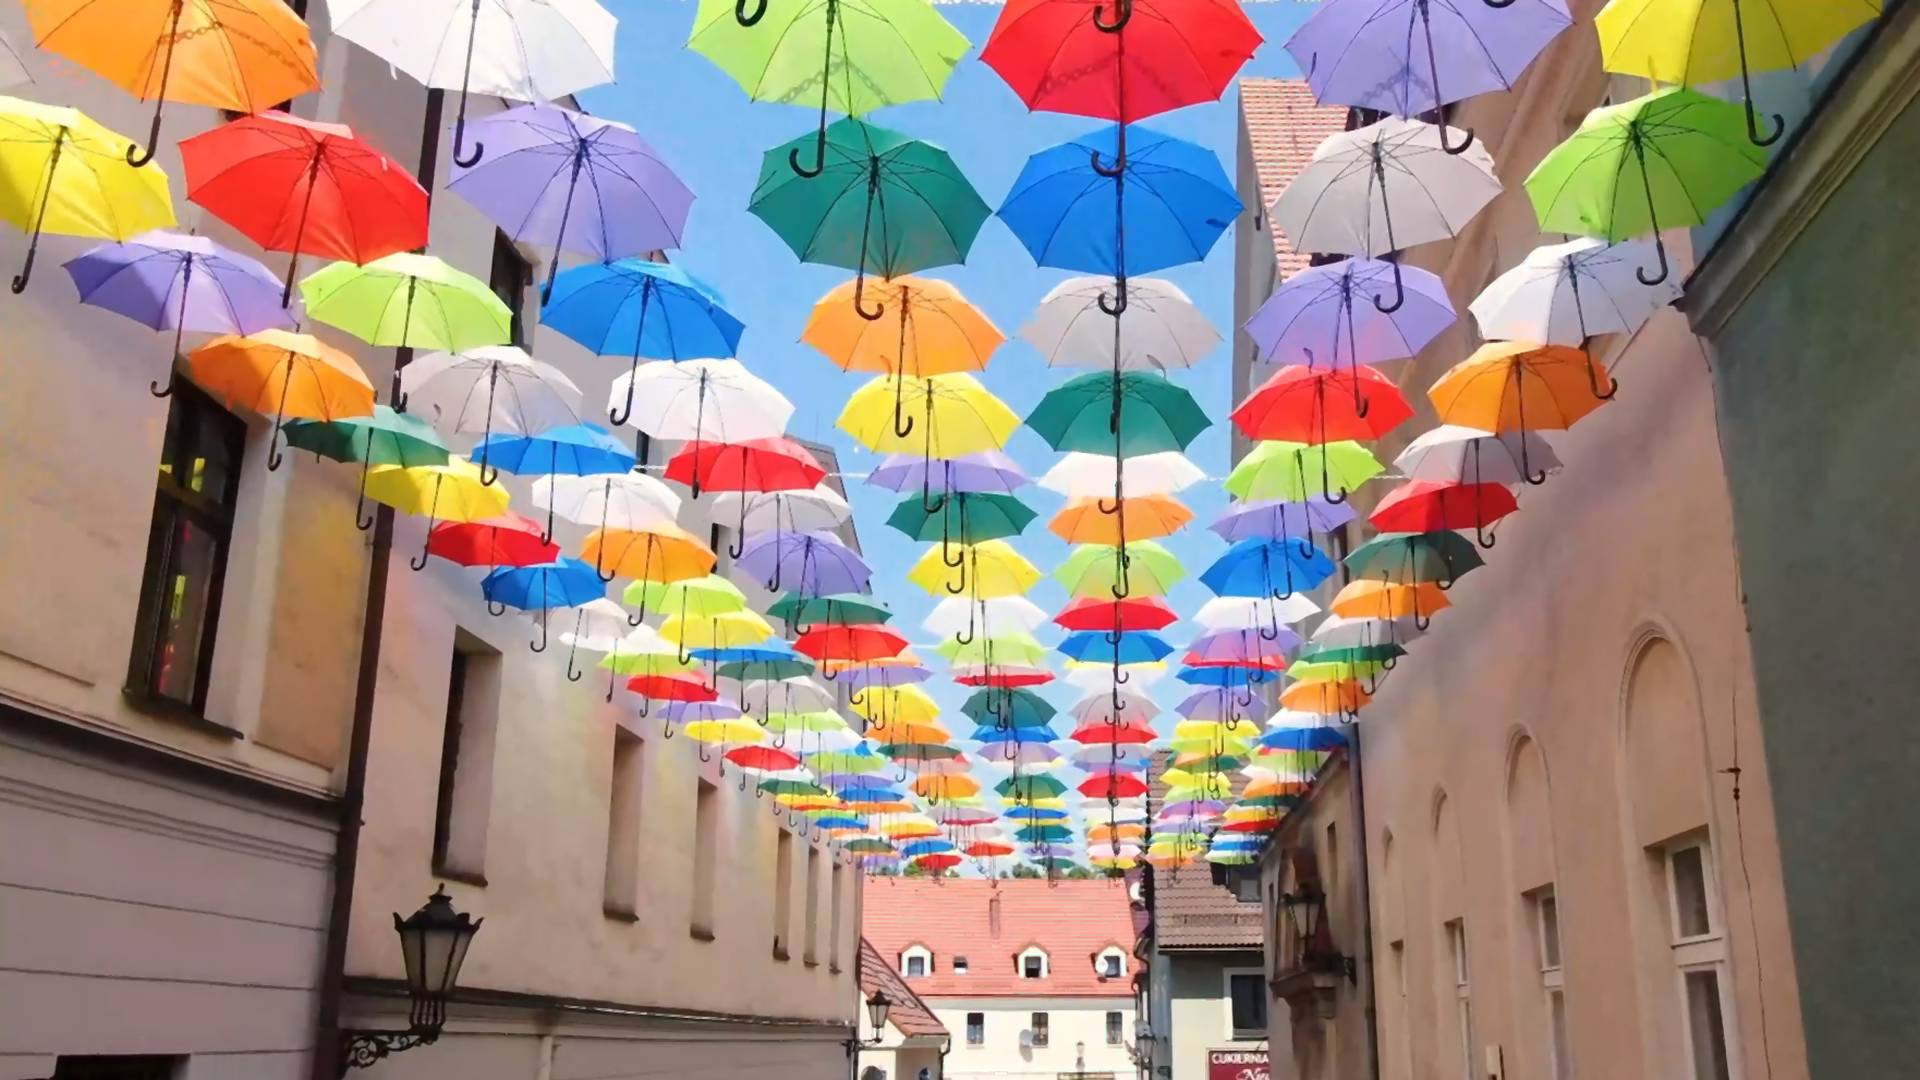 Pszczyna. Radny PiS uważa, że kolorowe parasolki to "inscenizacja tęczowej flagi"